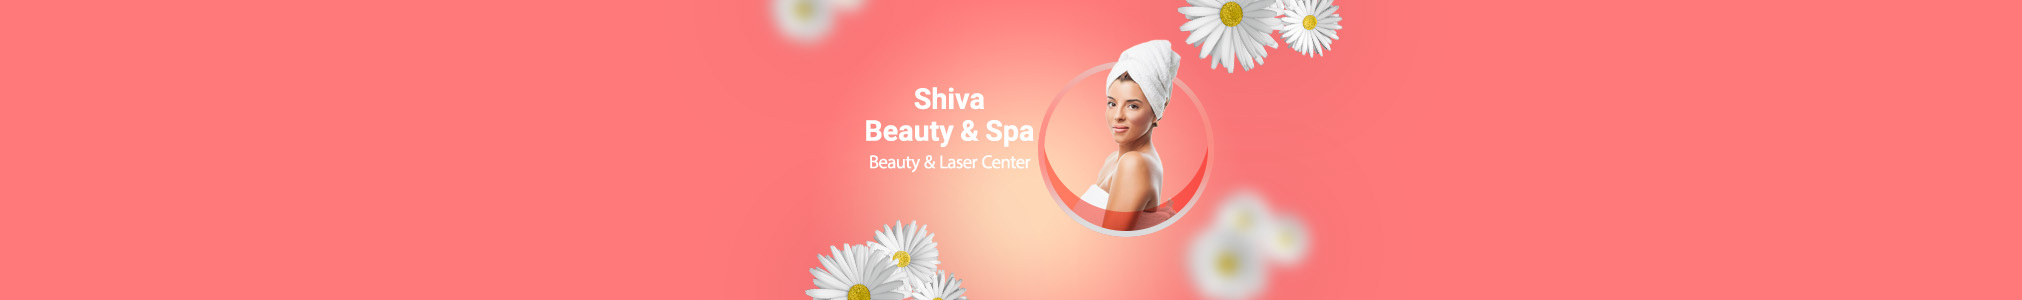 Shiva Beauty & Spa